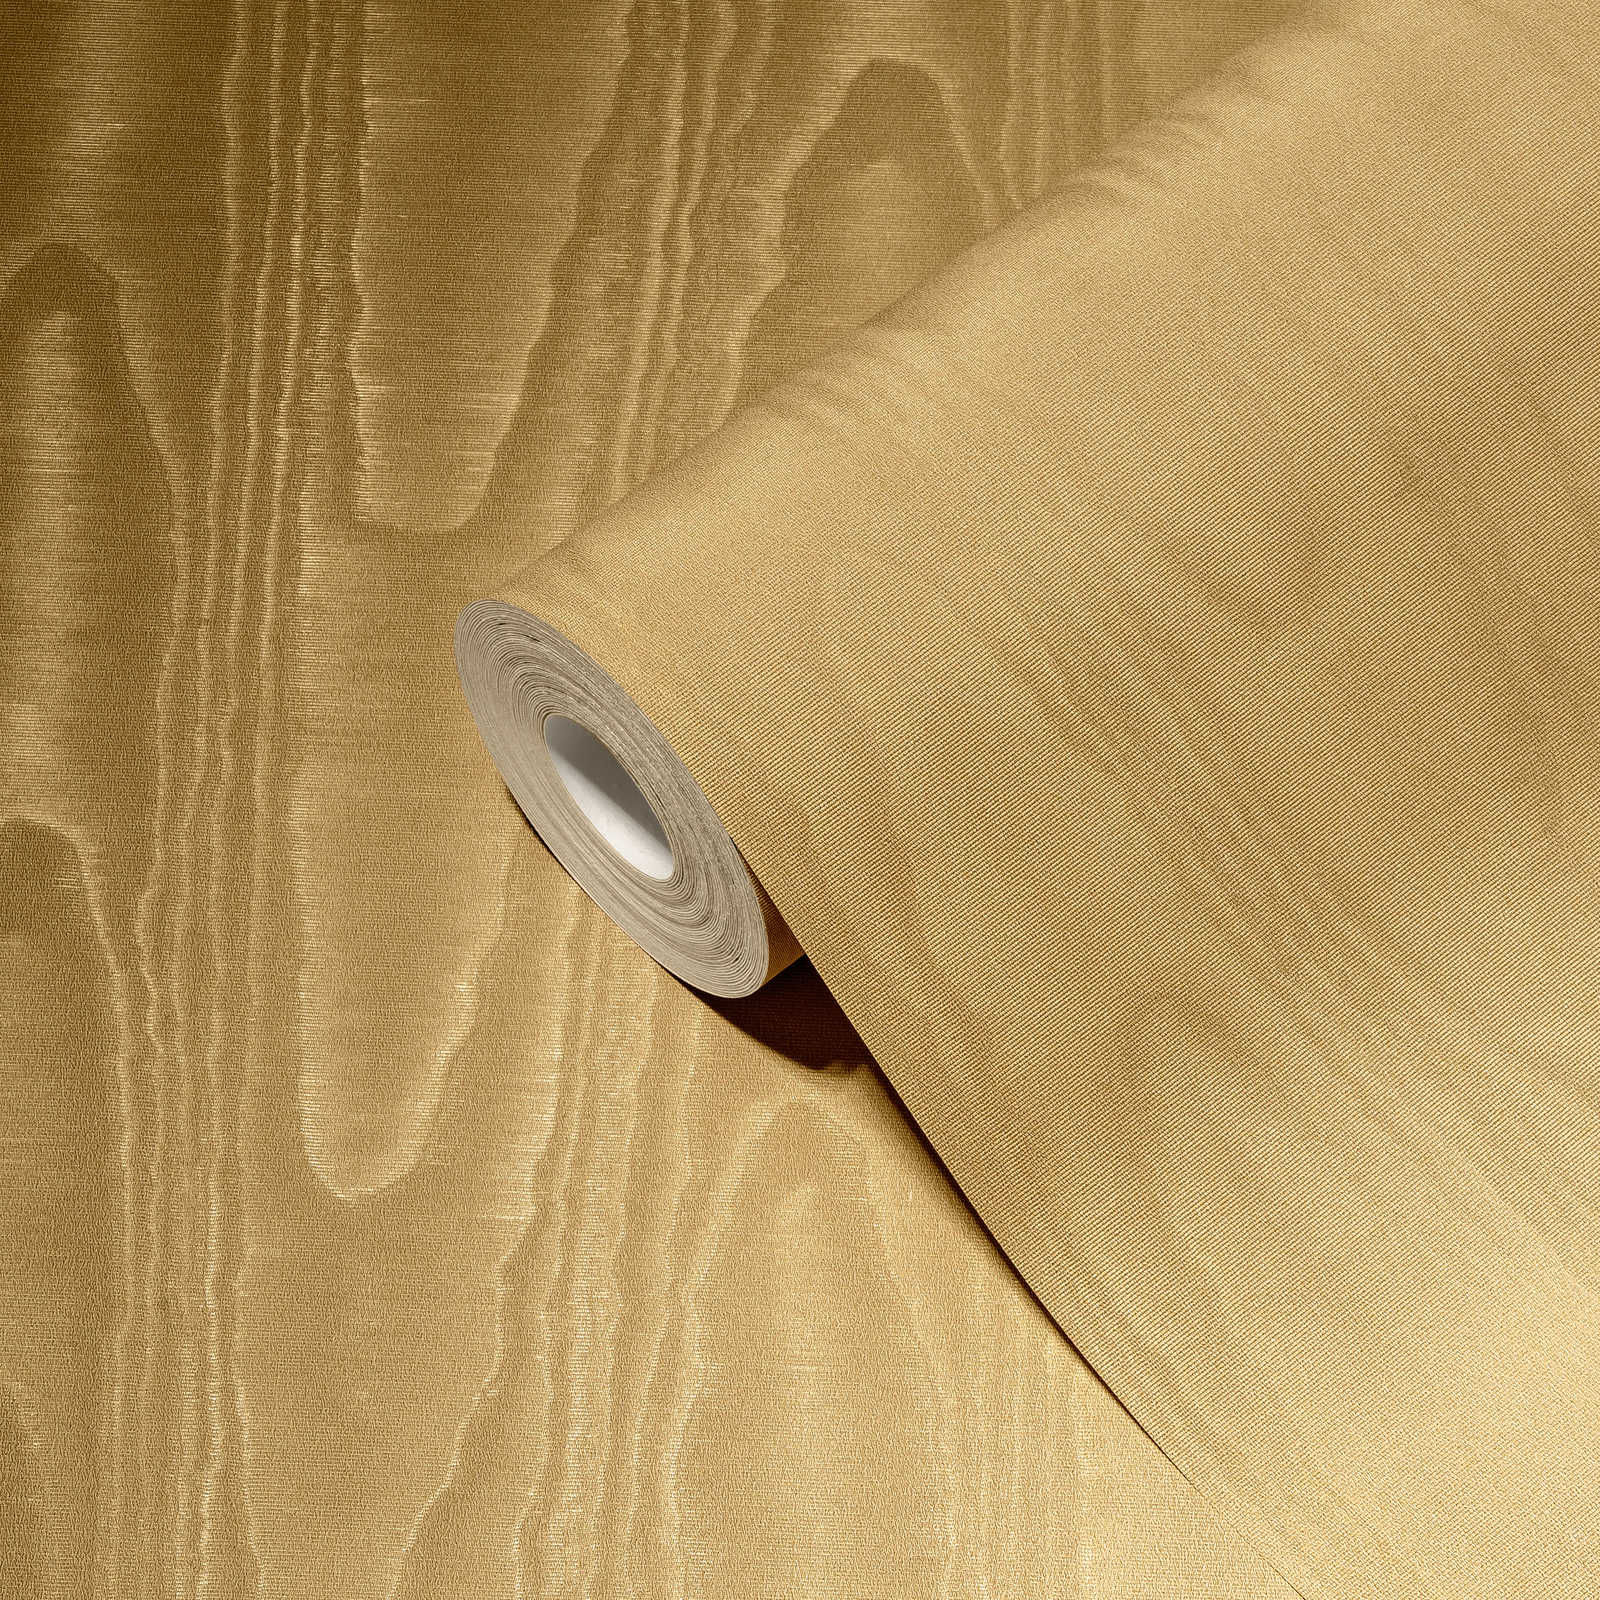             Textielachtig behang met zijdemoiré-effect - bruin, geel
        